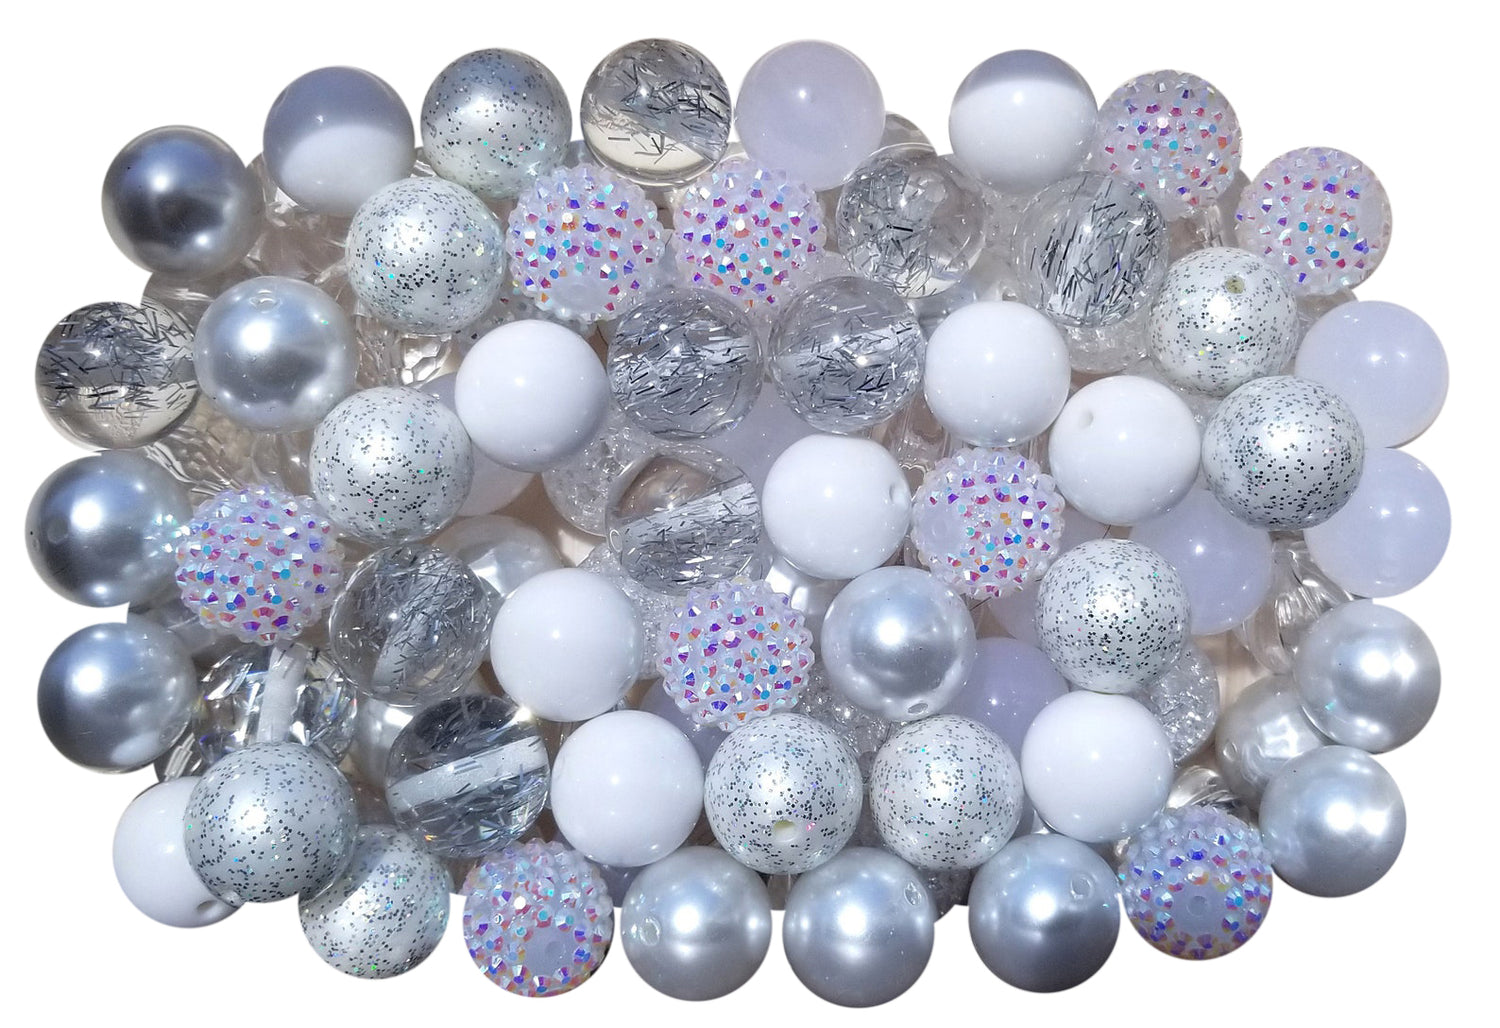 bubblegum bead starter kit mixed colors 20mm bubblegum beads